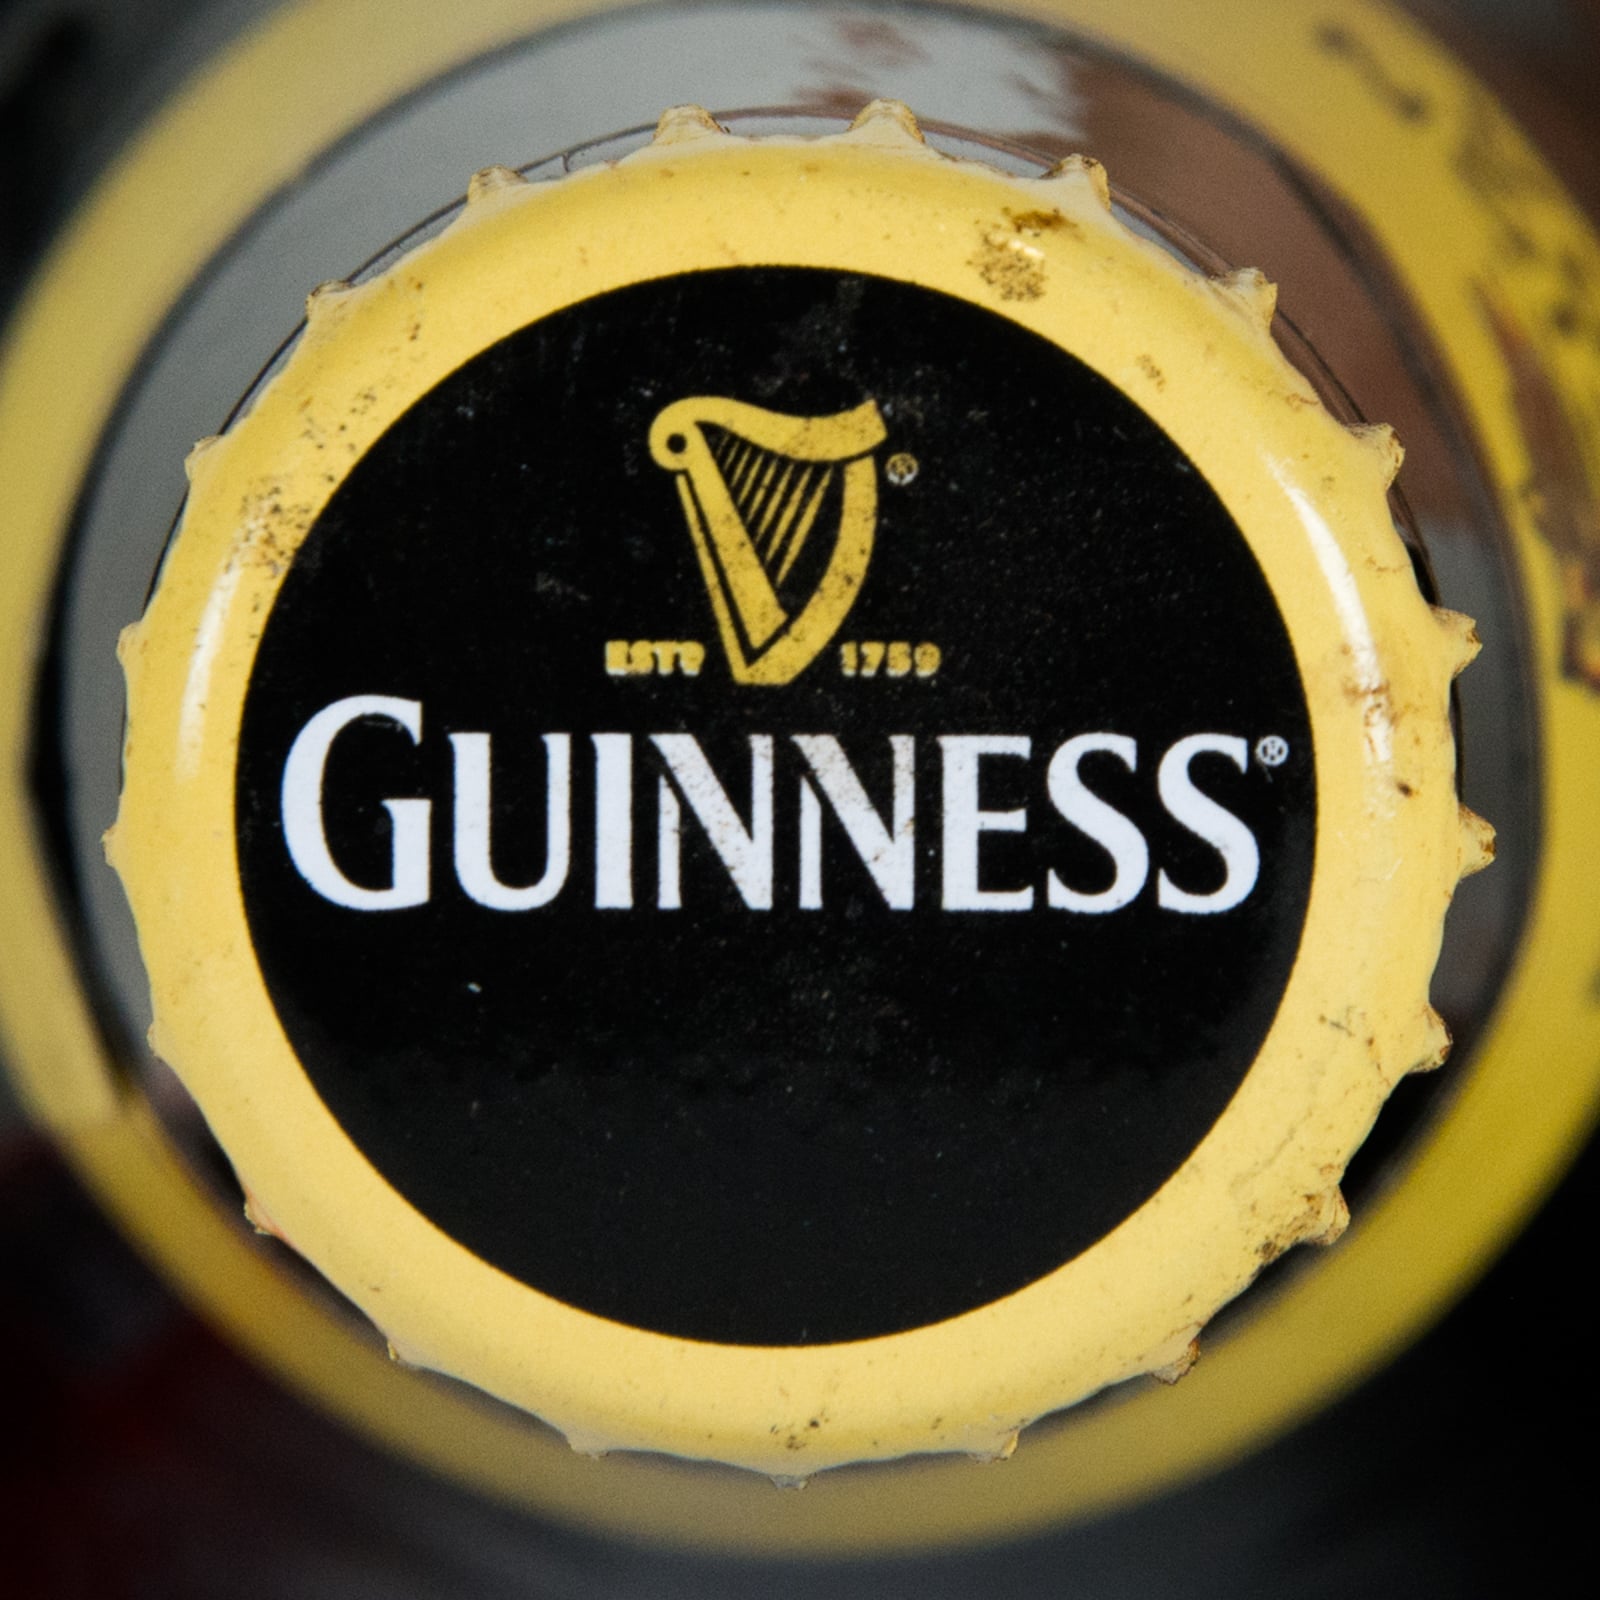 Guinness Foreign Extra Bottle, 640 ml (CM604)